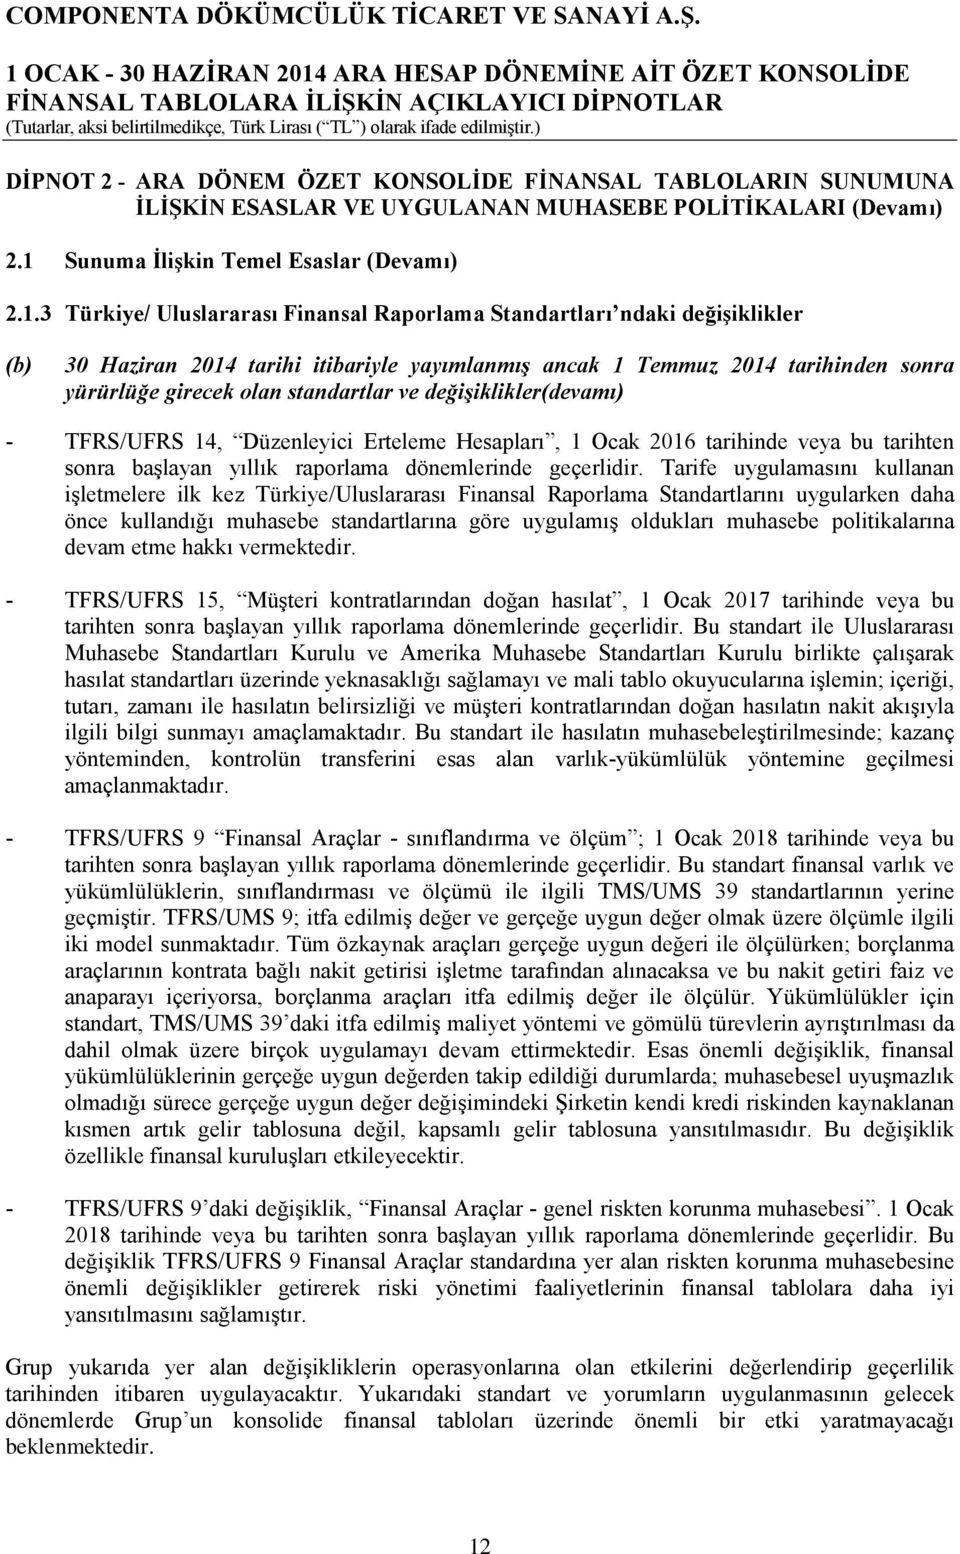 3 Türkiye/ Uluslararası Finansal Raporlama Standartları ndaki değişiklikler (b) 30 Haziran 2014 tarihi itibariyle yayımlanmış ancak 1 Temmuz 2014 tarihinden sonra yürürlüğe girecek olan standartlar